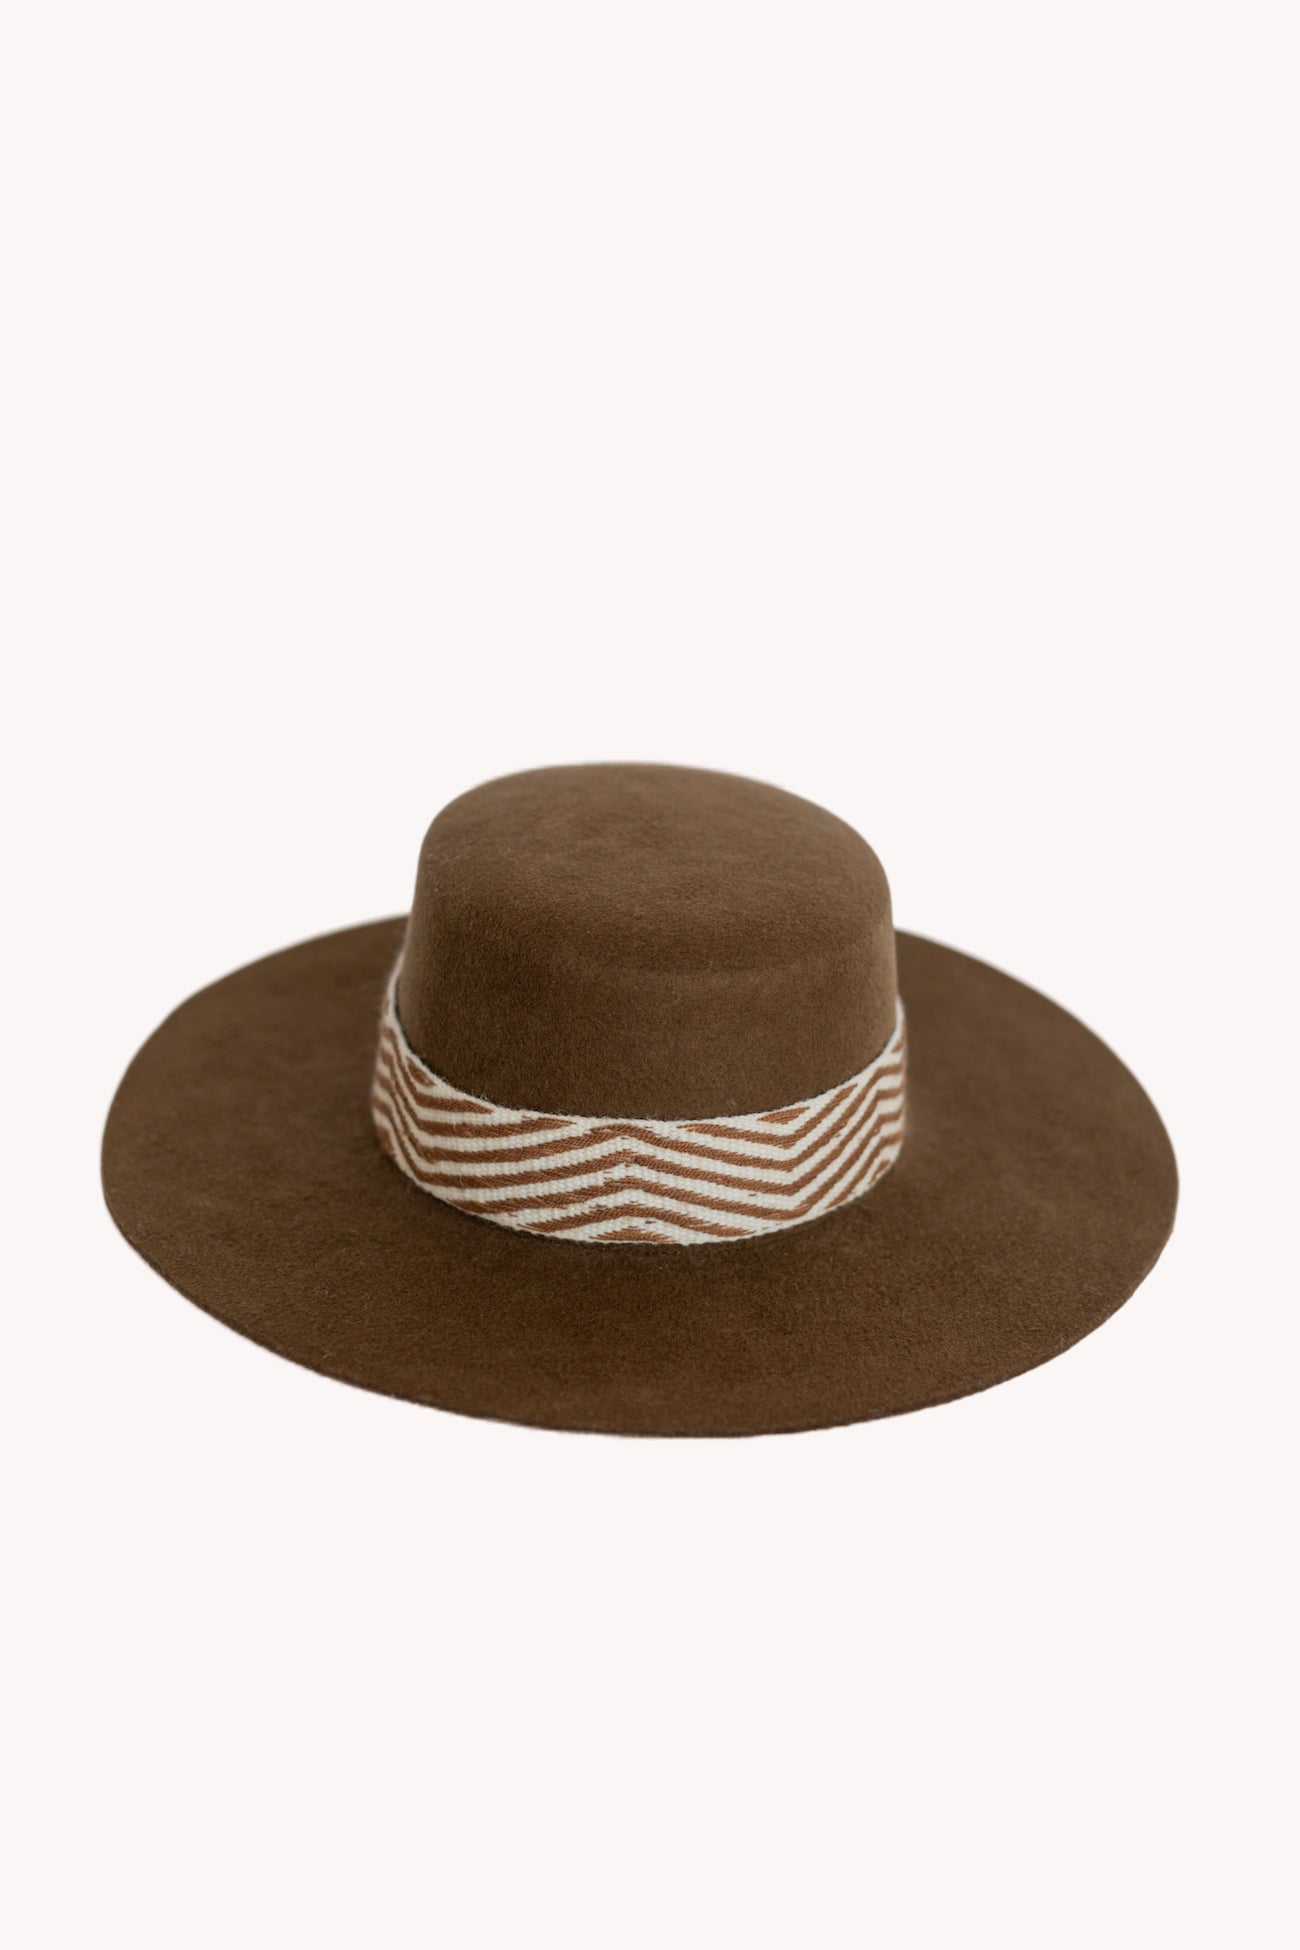 Brown Spanish style Peruvian hat